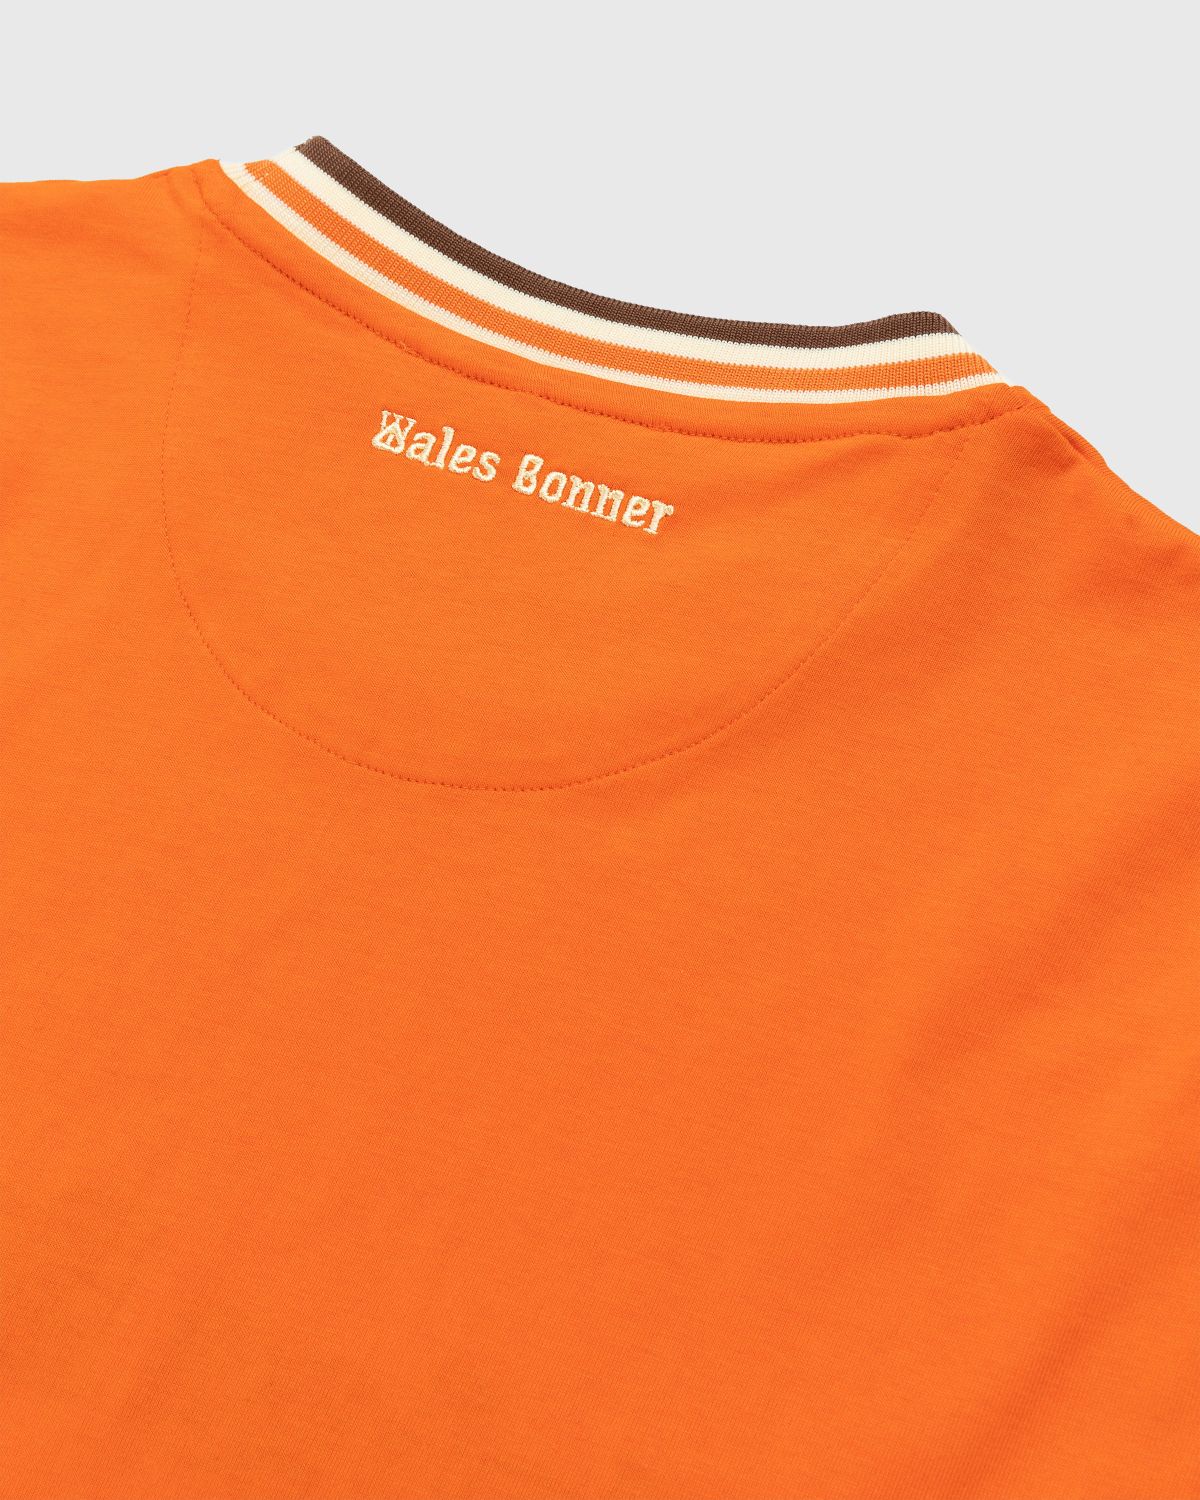 Wales Bonner – Original T-Shirt Orange - T-shirts - Orange - Image 3